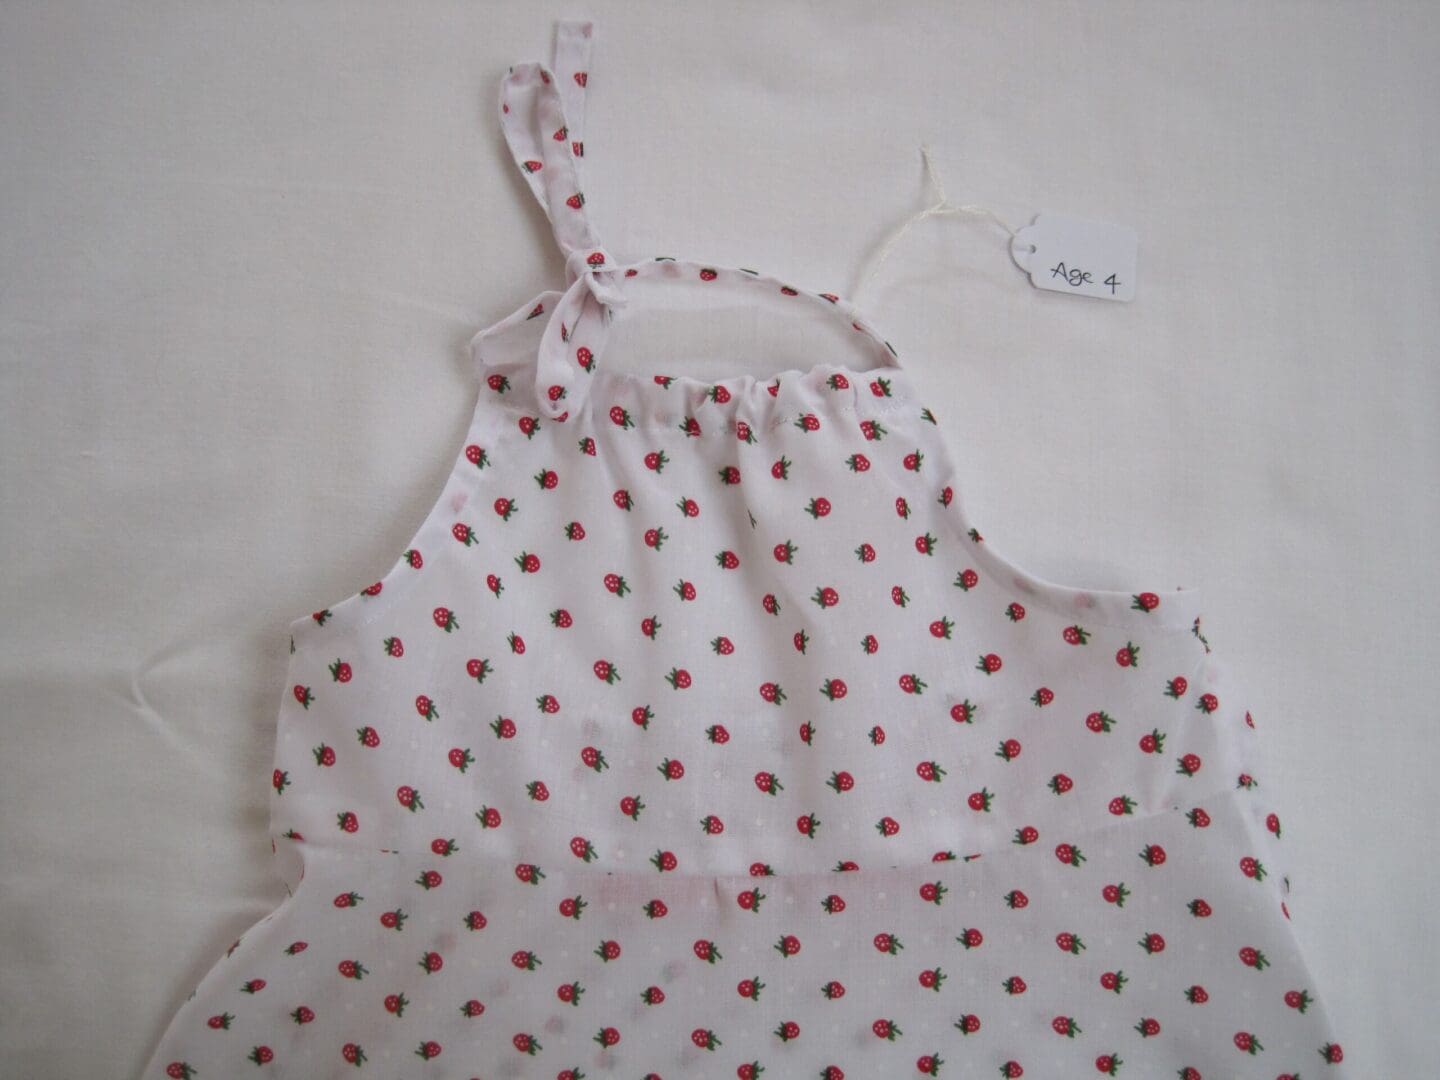 child's cotton summer dress